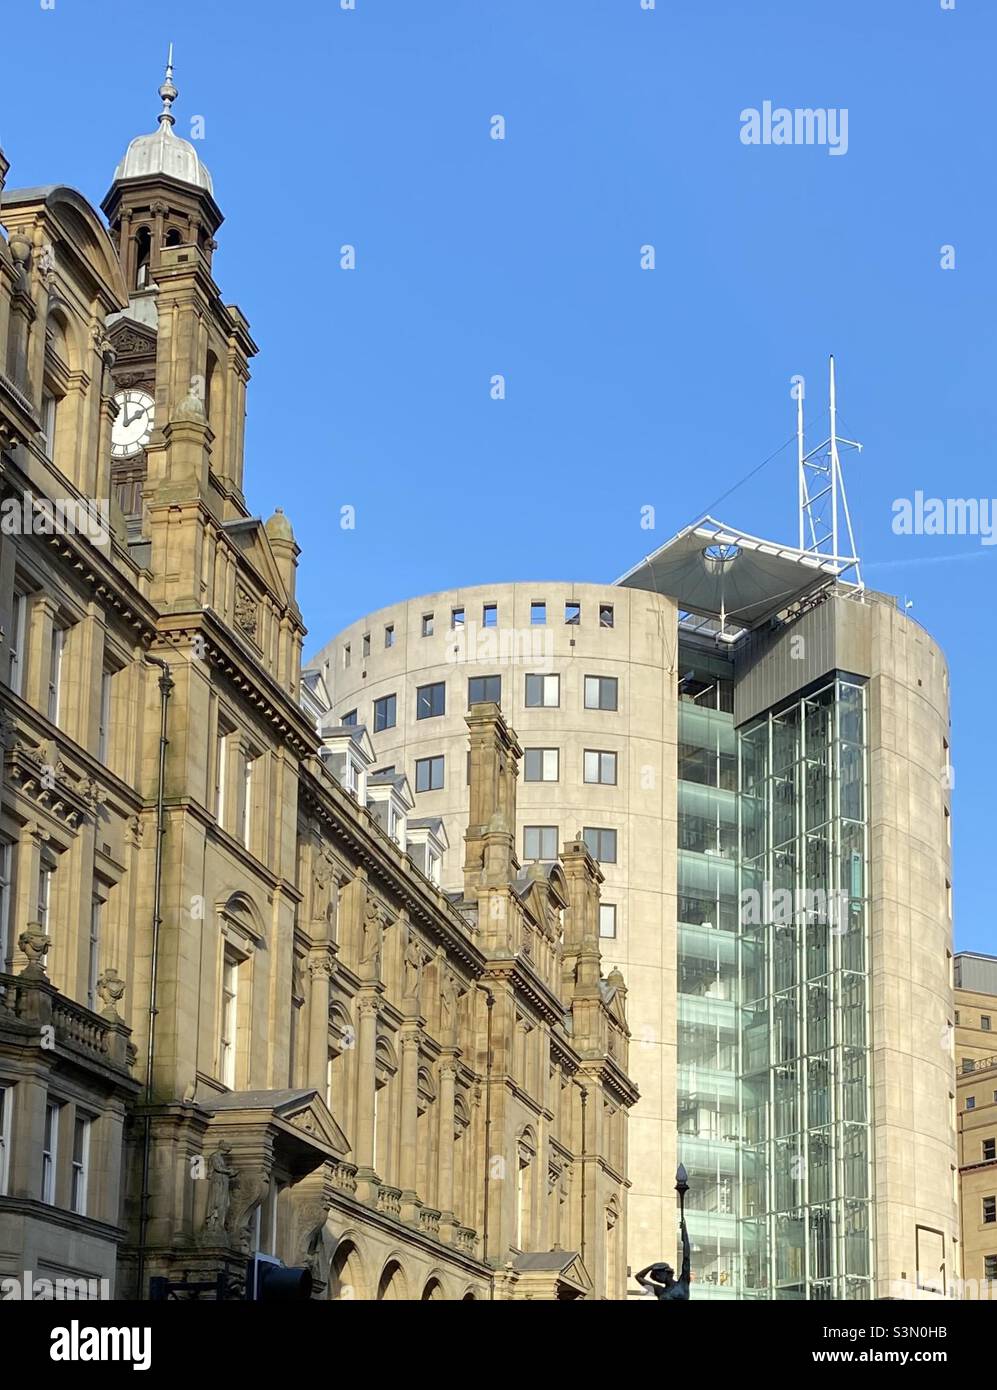 Teil des City Square, Leeds, mit dem ehemaligen General Post Office (1896) und No 1 City Square (1998). Weitere Gebäude in der Nähe sind die Mill Hill Chapel, das Queen’s Hotel und das ehemalige Majestic Cinema. Stockfoto